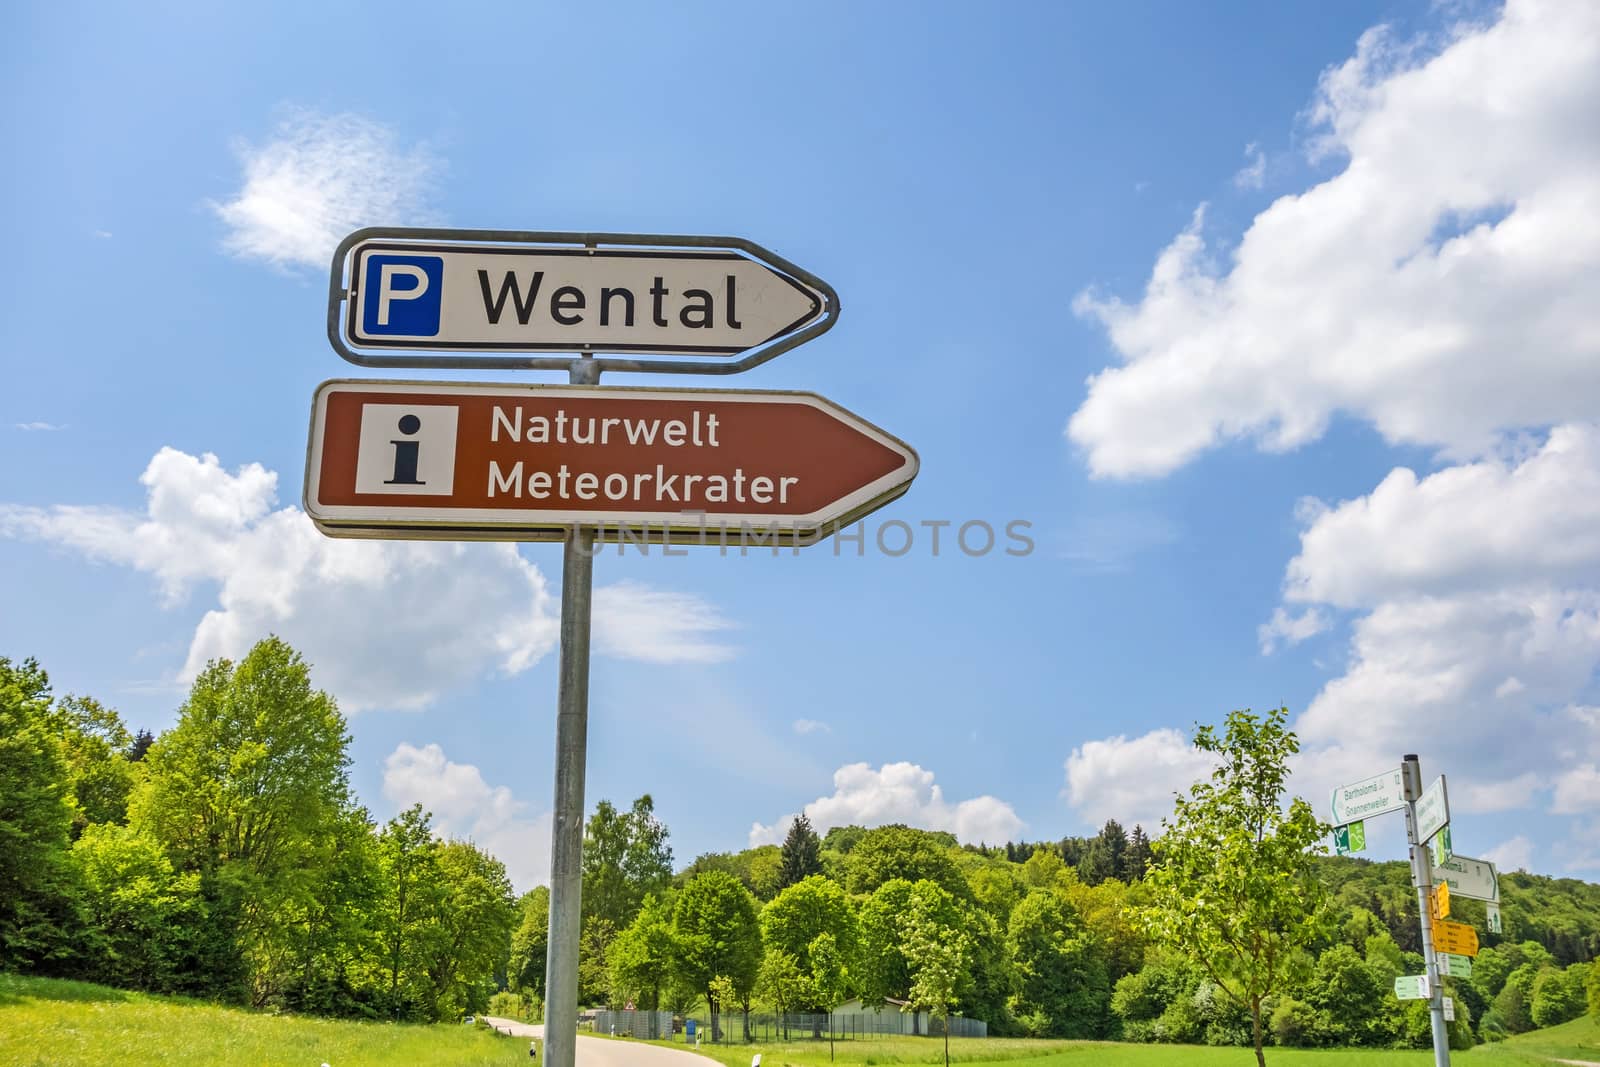 Wental valley signpost - Naturwelt Meteorkrater by aldorado